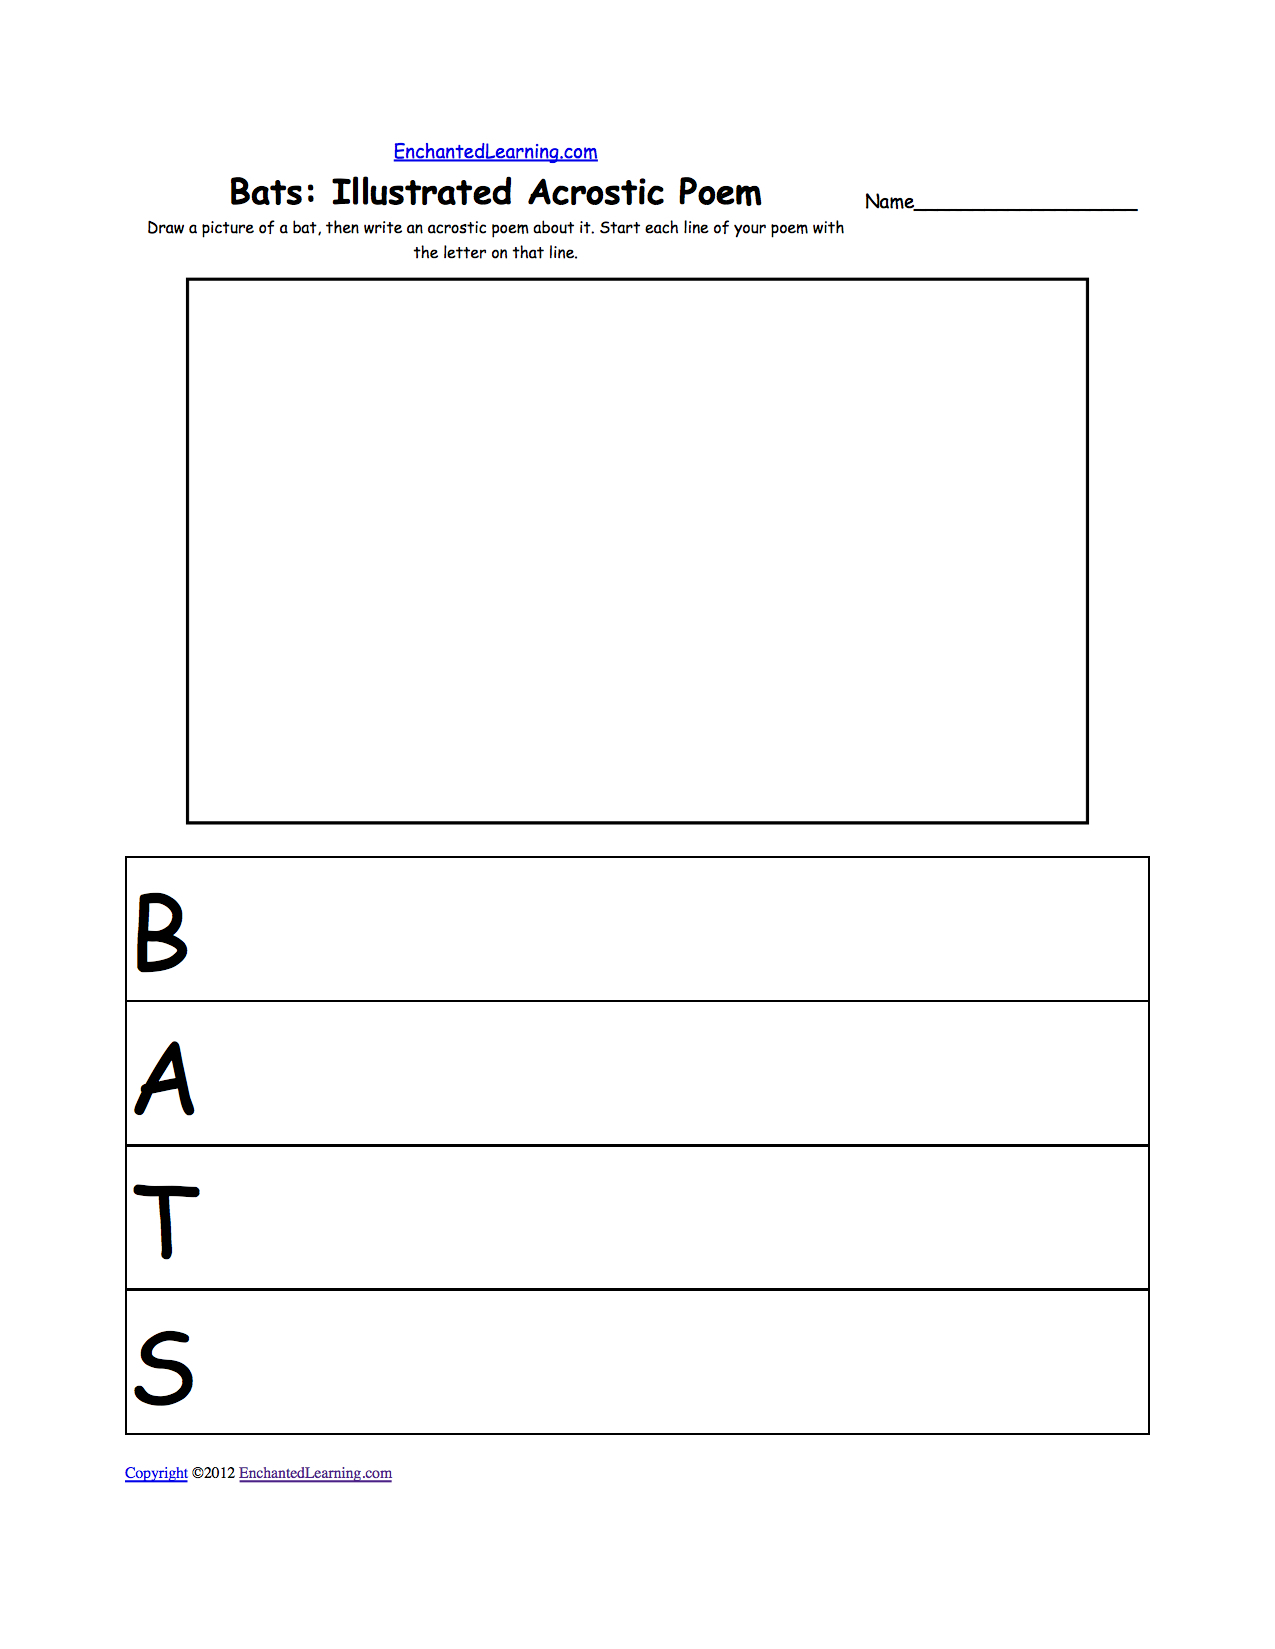 Bats At Enchantedlearning - Free Printable Bat Writing Paper | Free - Free Printable Bat Writing Paper